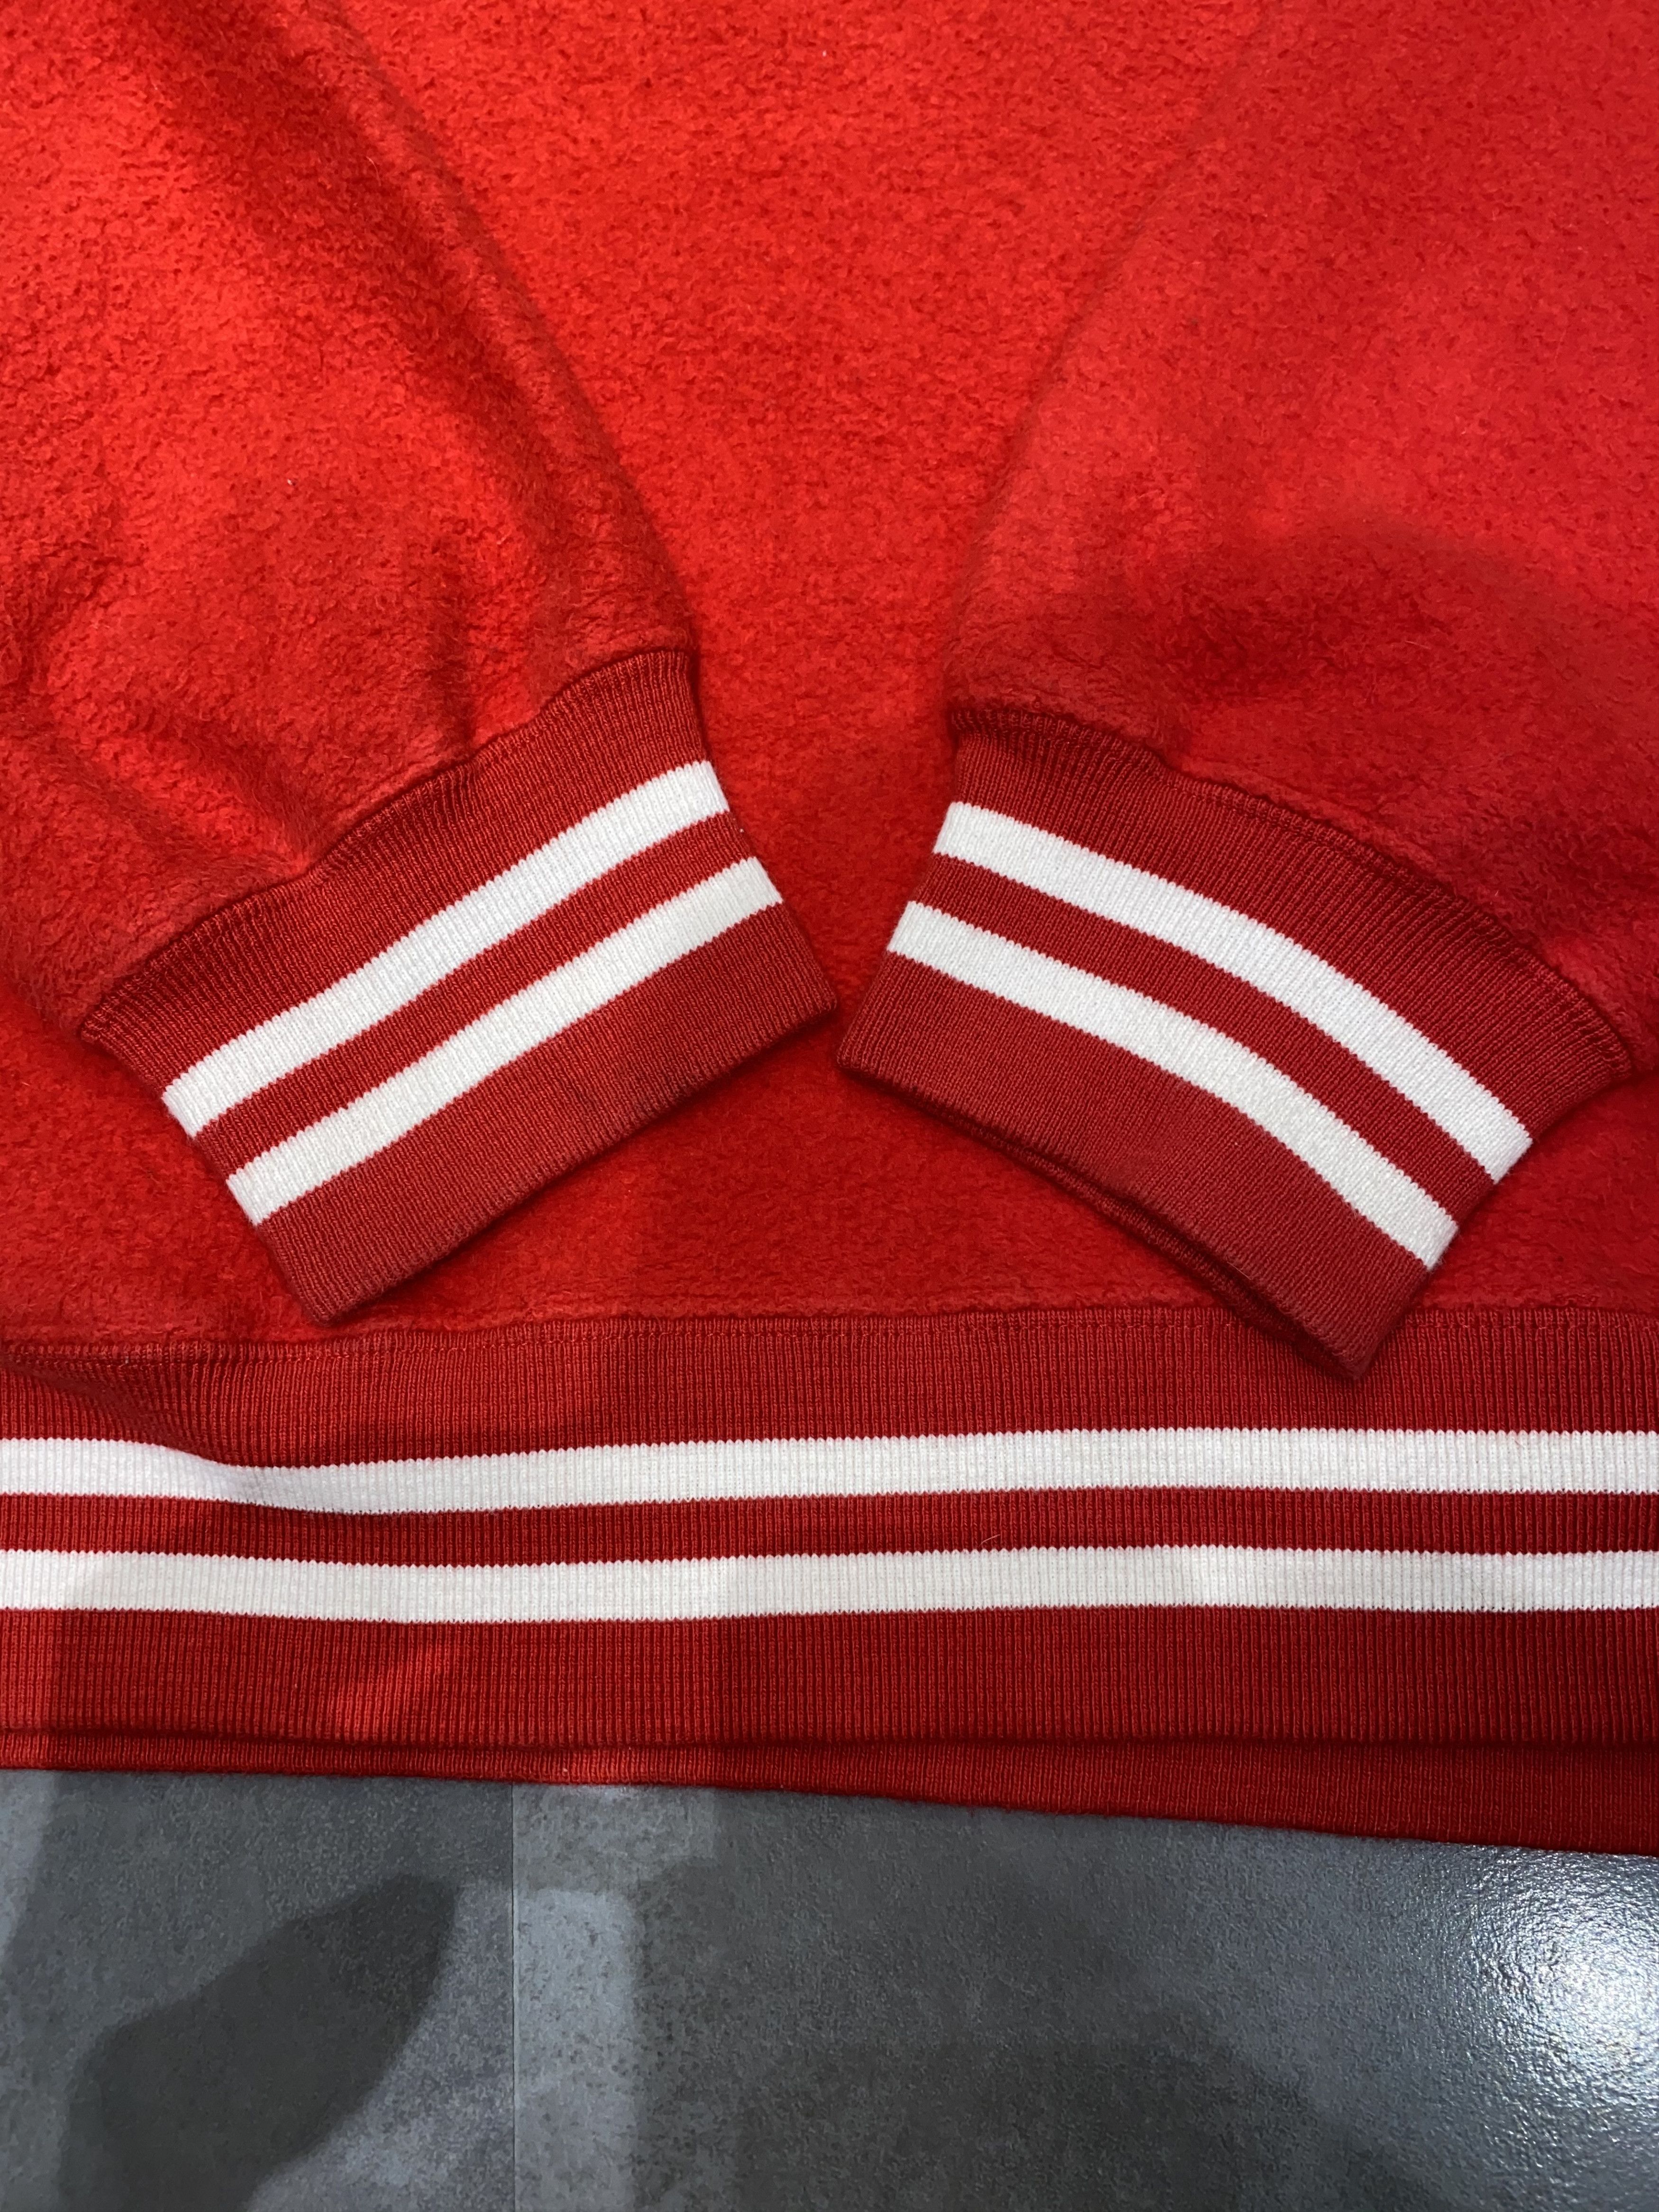 Supreme FW16 Supreme Big Logo Red Fleece Hoodie Size US XL / EU 56 / 4 - 11 Thumbnail